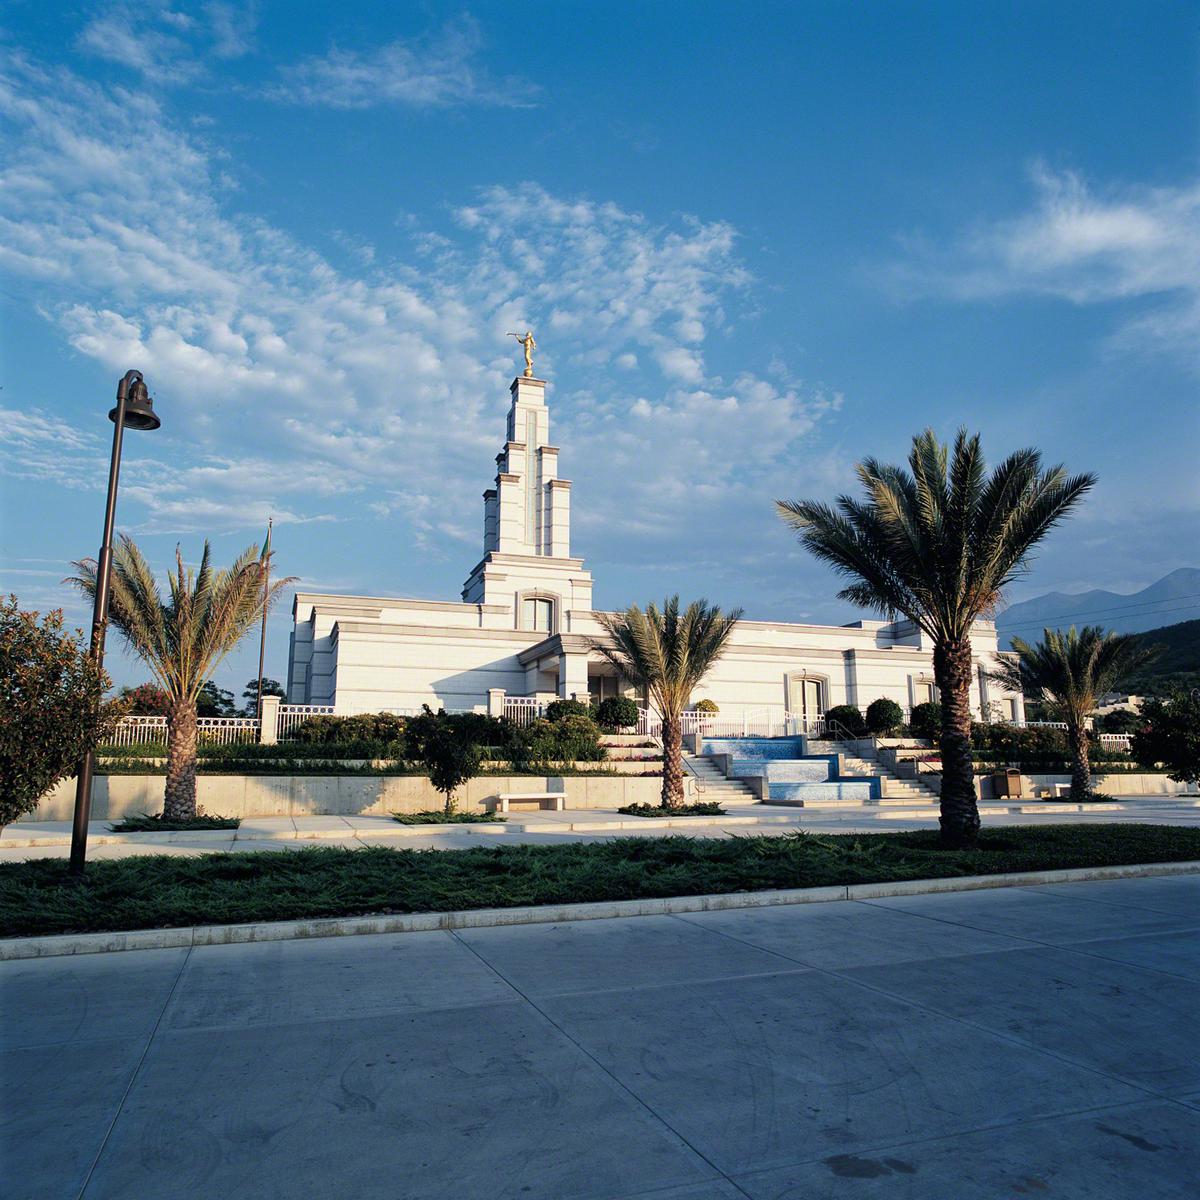 The Monterrey Mexico Temple.